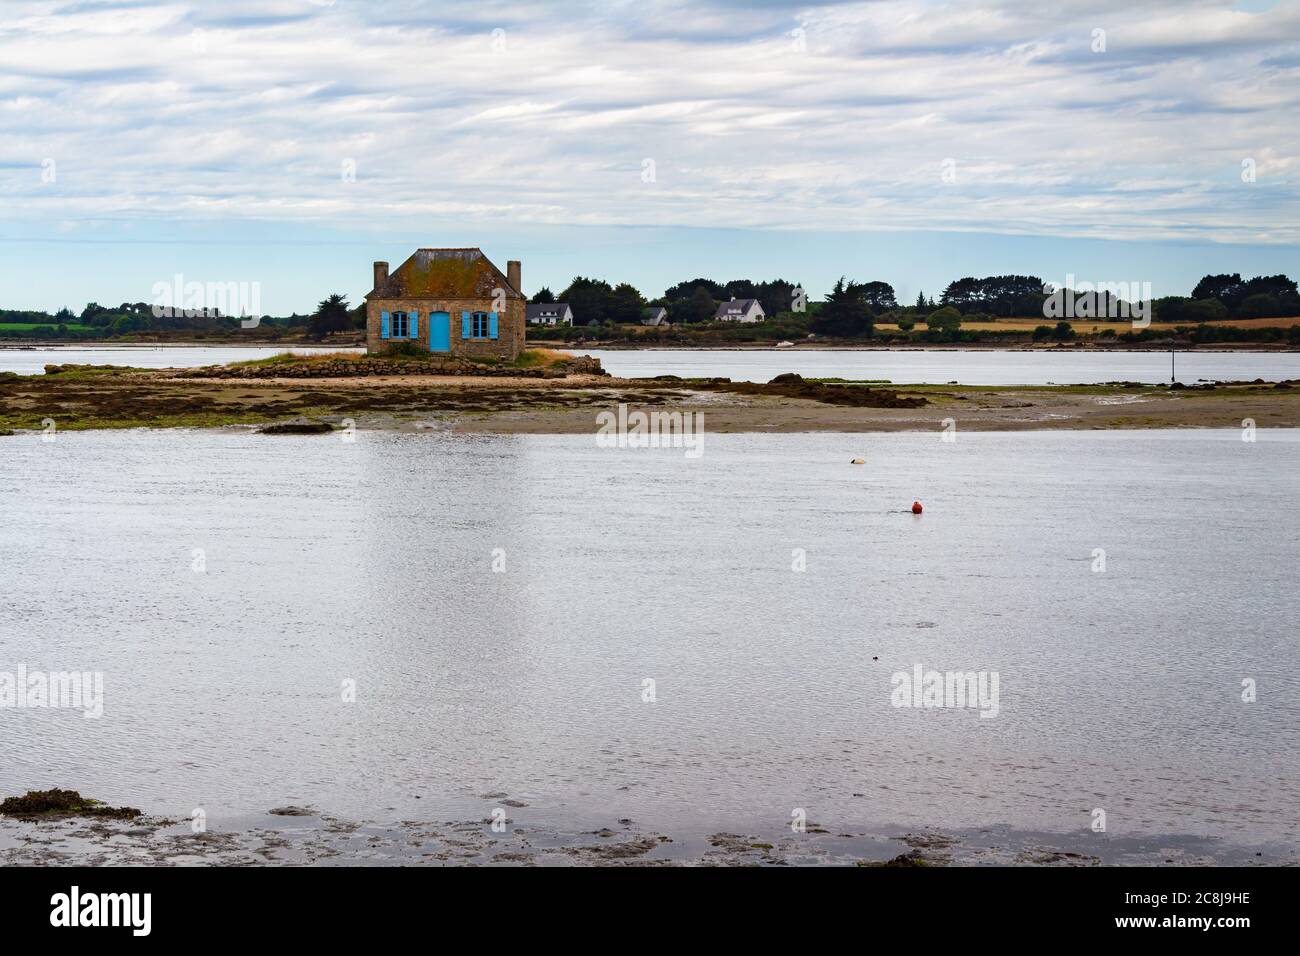 ÎLE DU SAINT-CADO, BRETAGNE, FRANCE : vue sur une maison bretonne typique située dans un illote près de l'île de Saint-Cado à marée basse. Banque D'Images